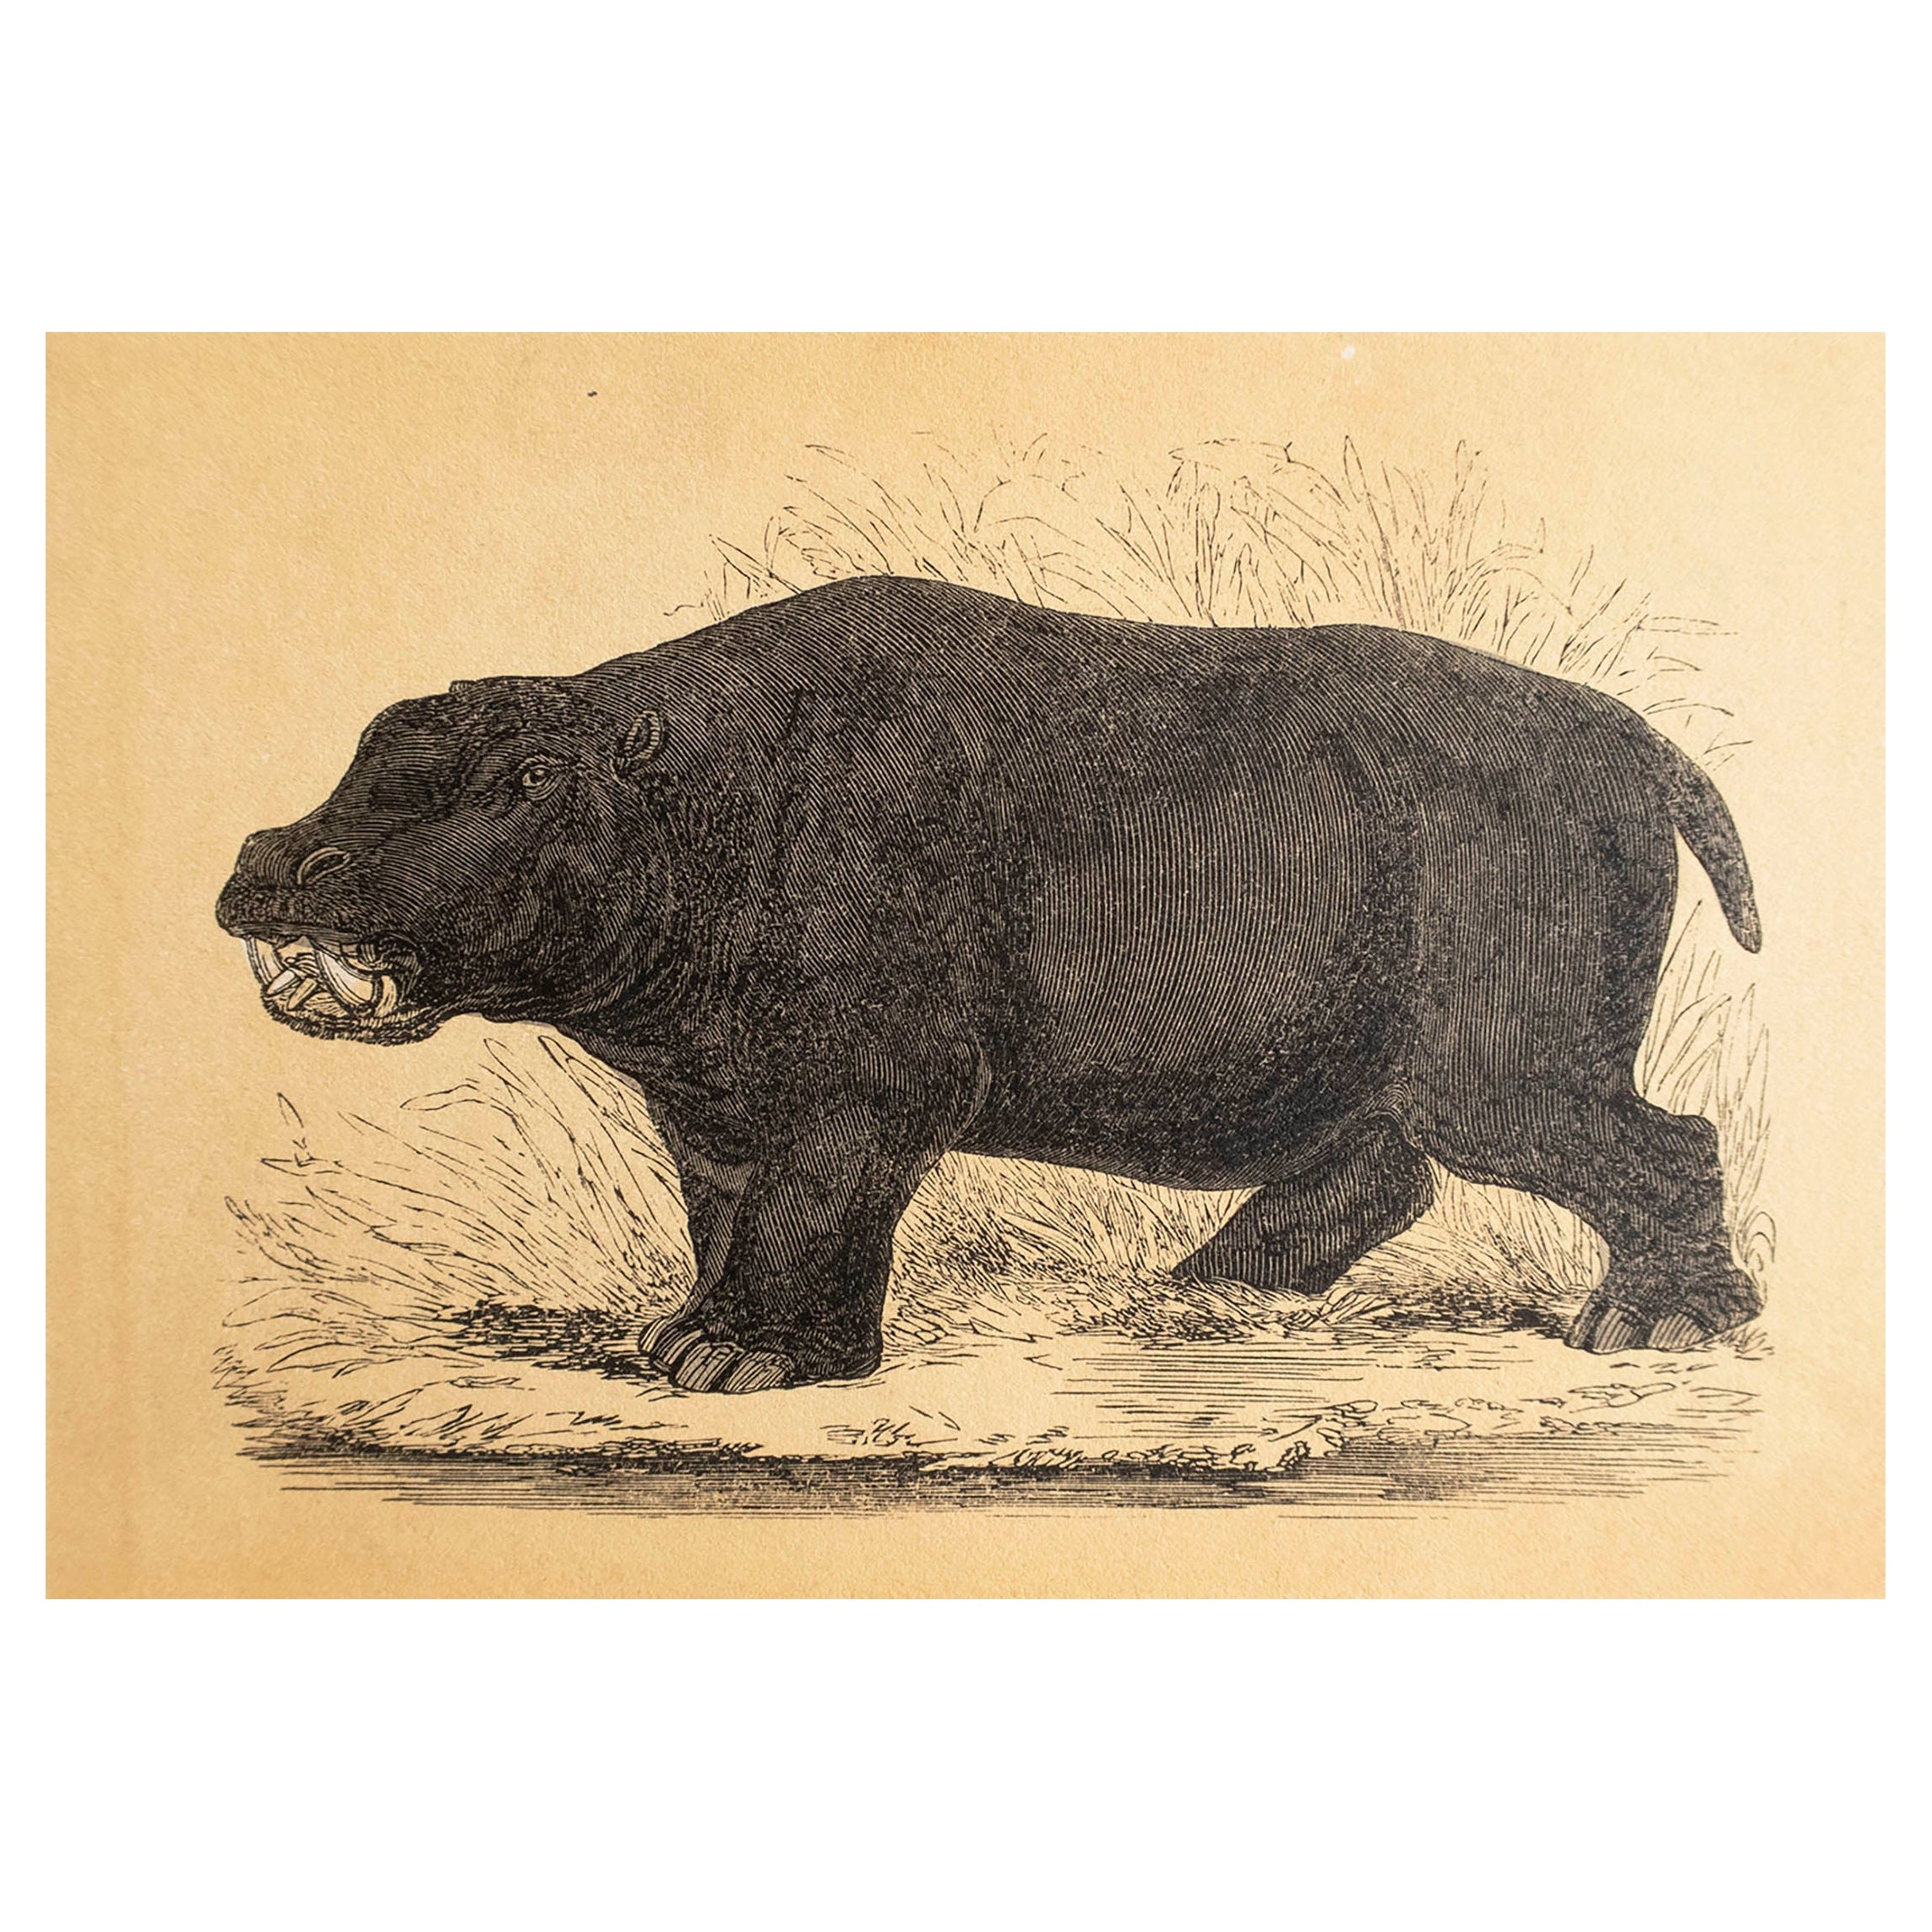  Original Antique Print of A Hippopotamus, circa 1850 For Sale